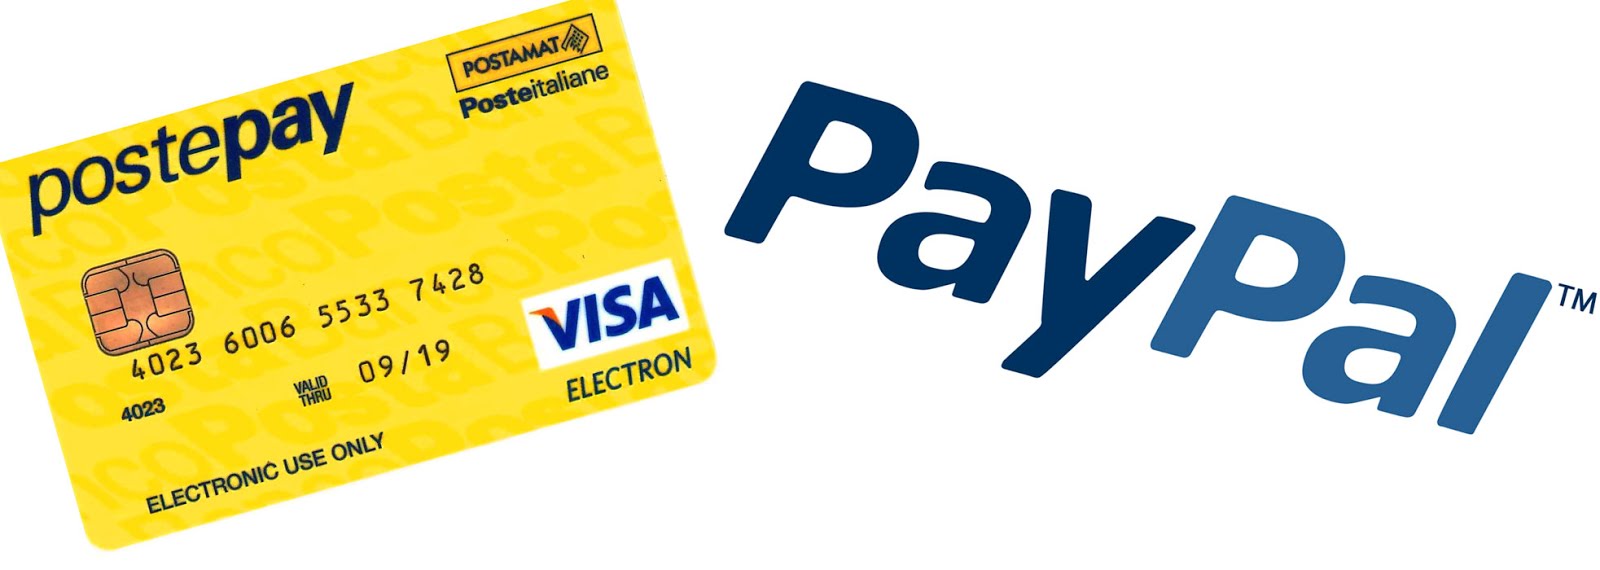 Conferme degli ordini con pagamenti anticpati tramite postepay o PayPal